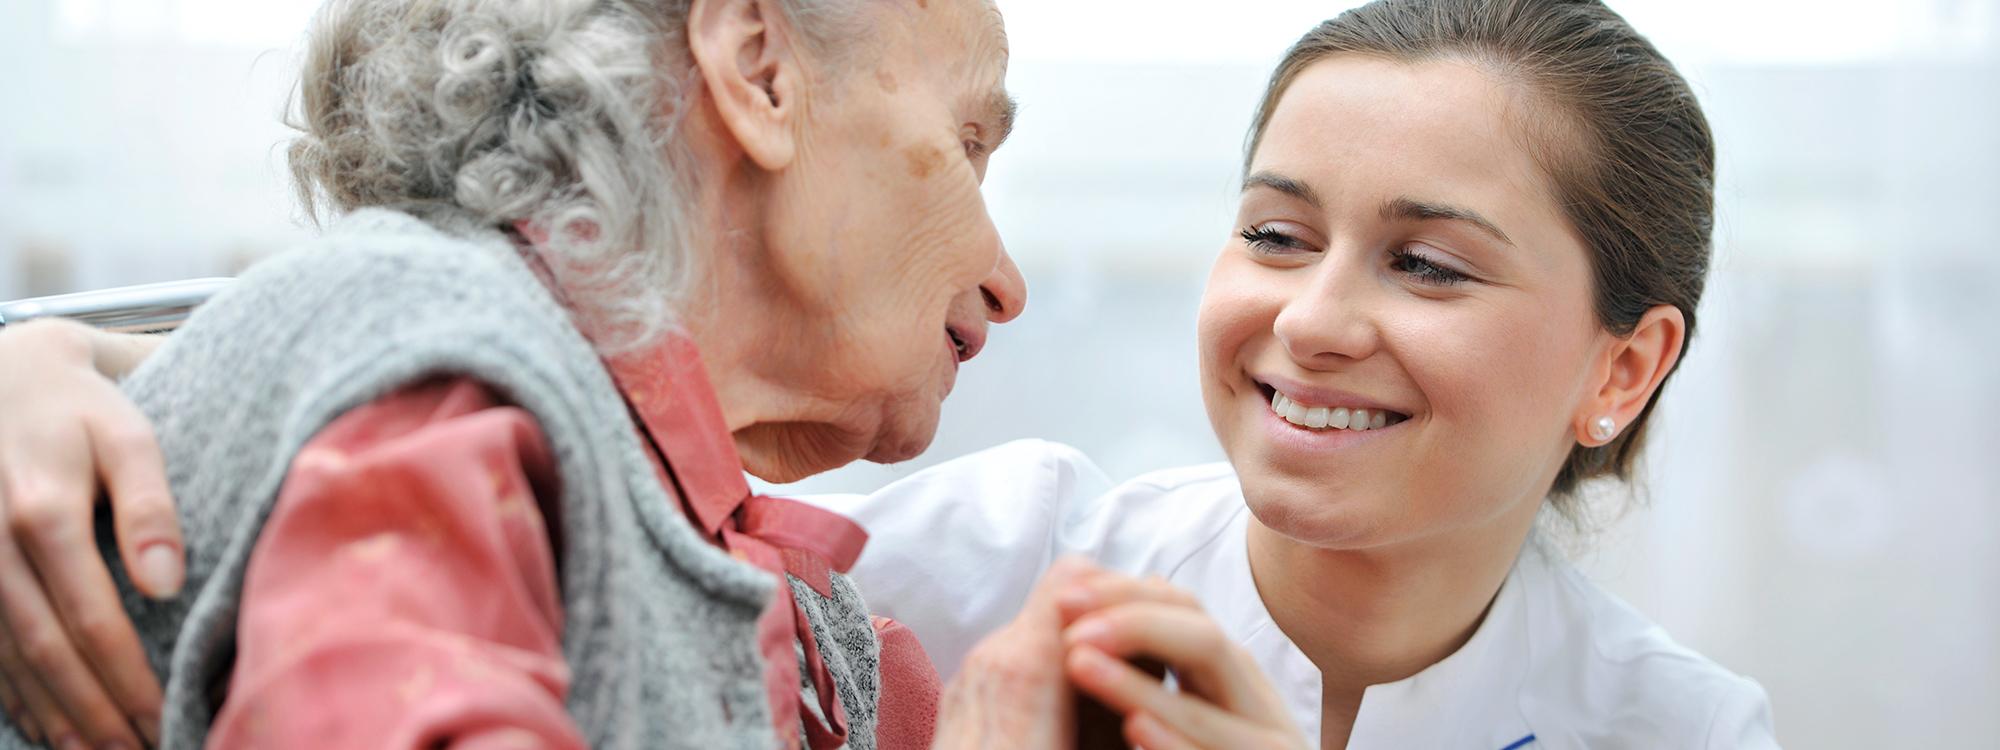 Nuori hoitajanainen ja vanha harmaahiuksinen nainen hymyilevät toisilleen.